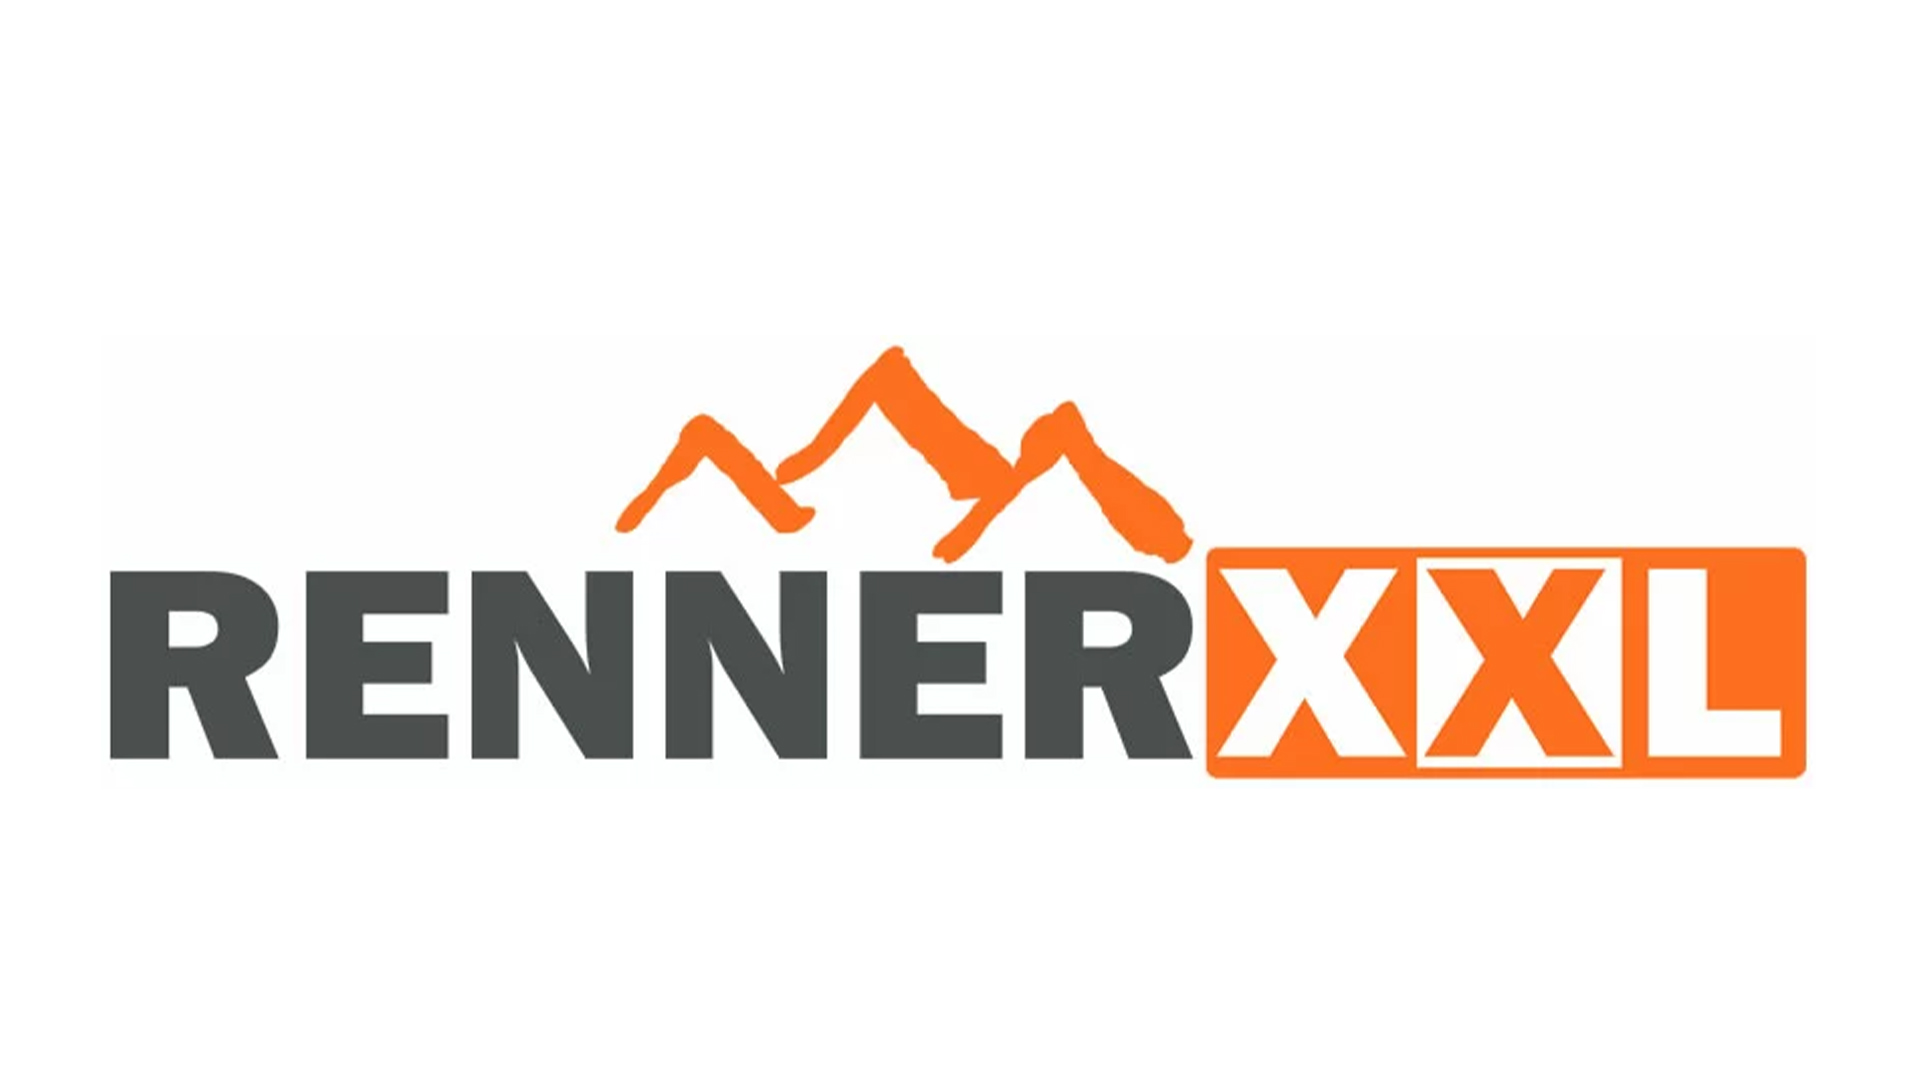 renner_xxl_logo